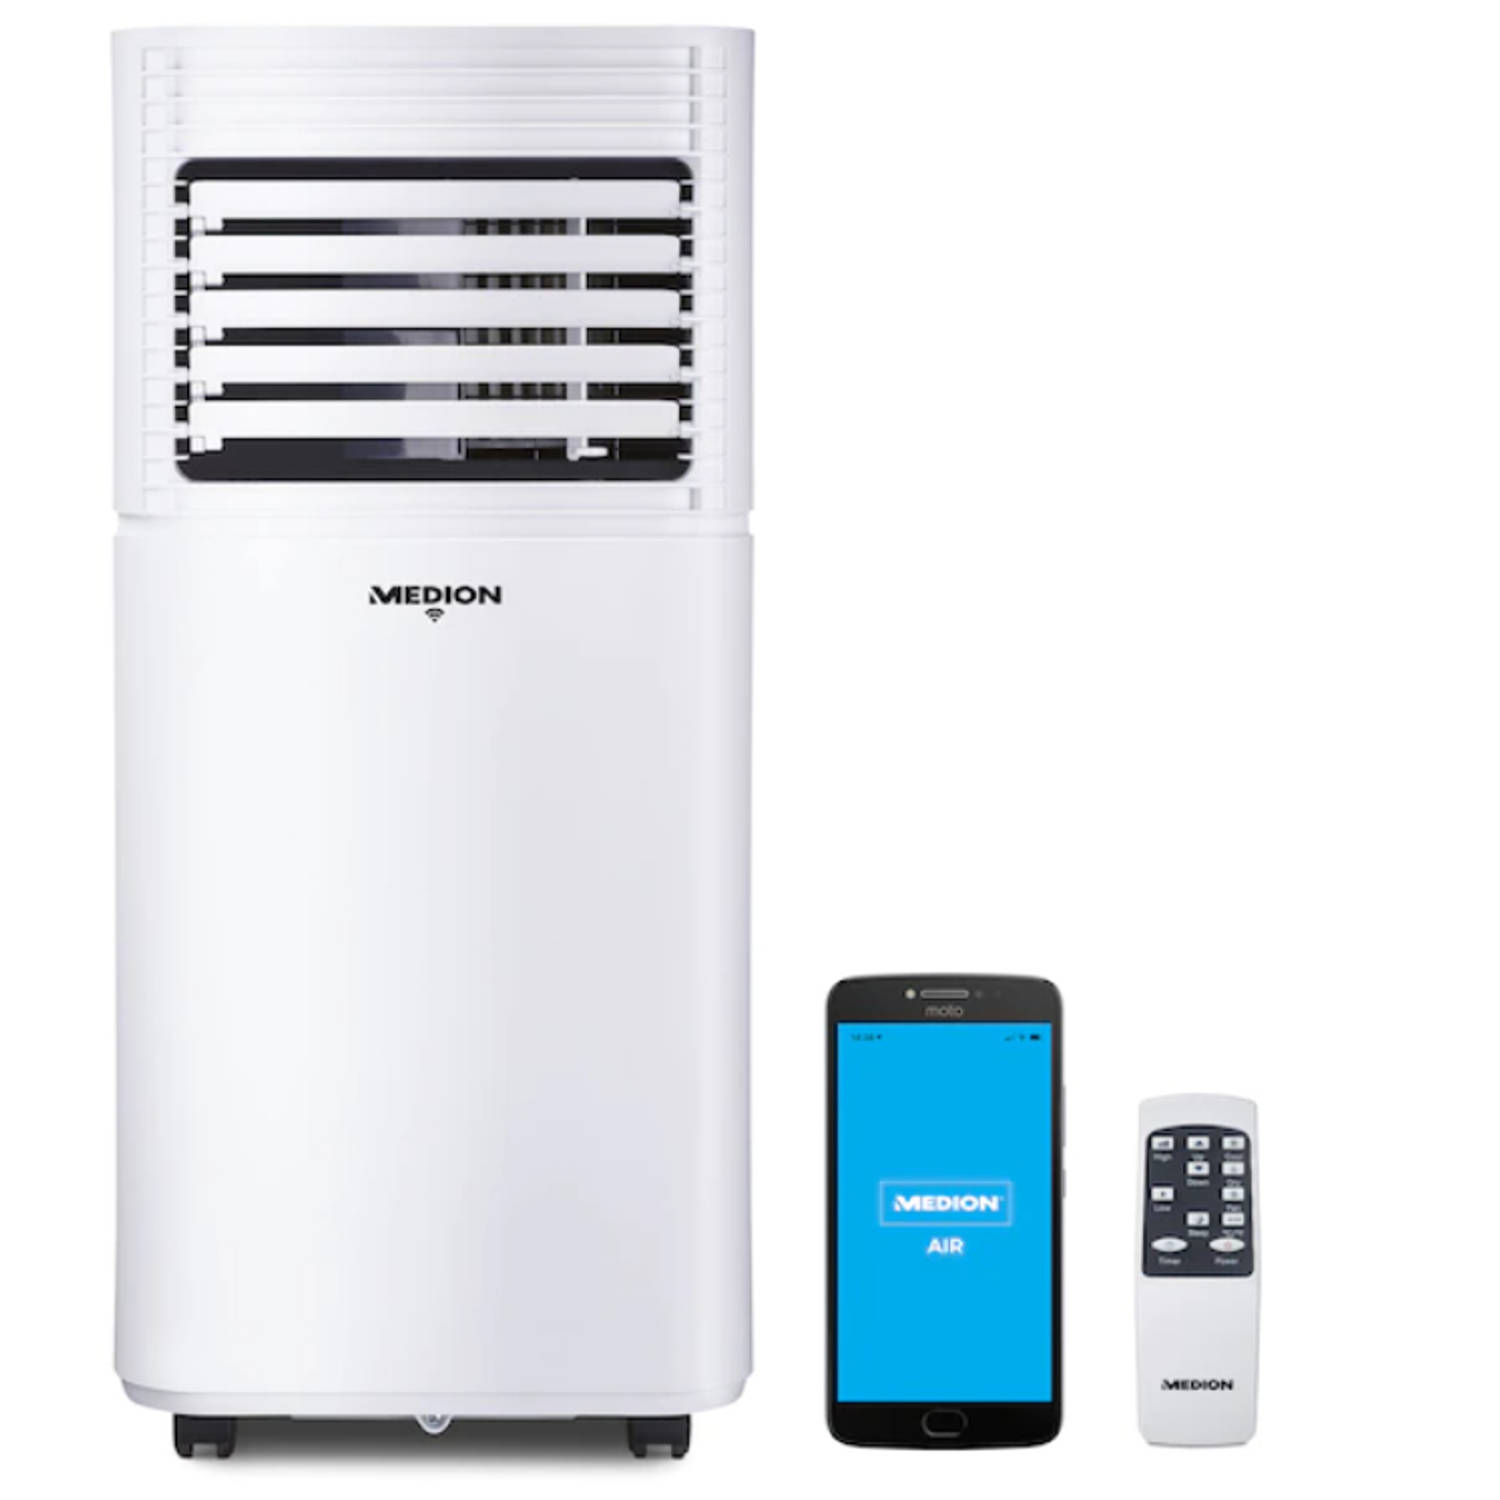 MEDION Smart mobiele airconditioner MD 37215 koelen ontvochtigen en ventileren koelvermogen 7.000 BTU